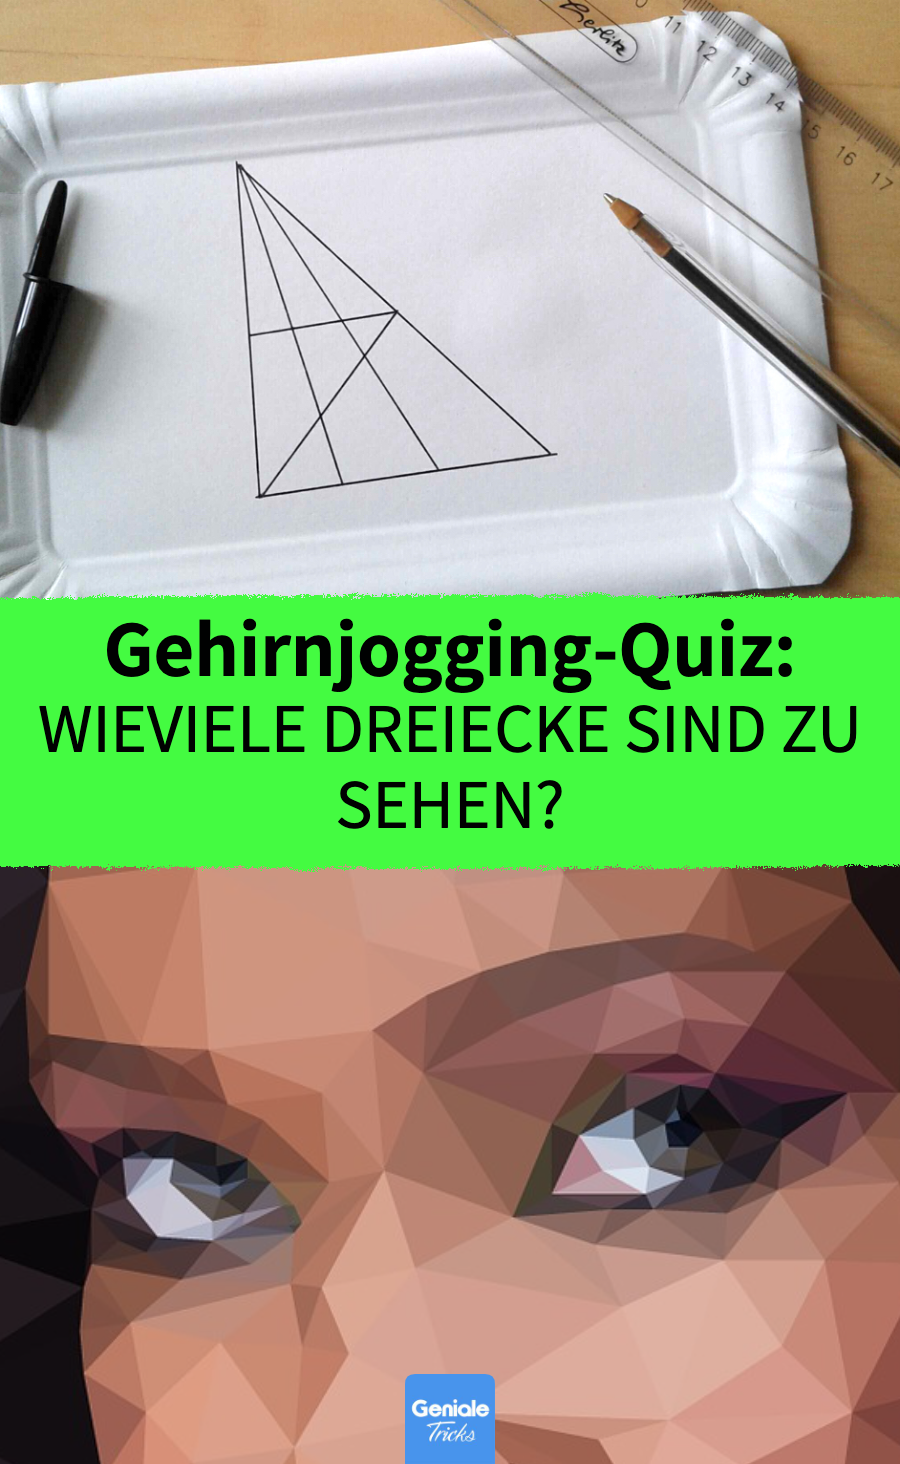 Gehirnjogging-Quiz: Wie viele Dreiecke sind zu sehen?